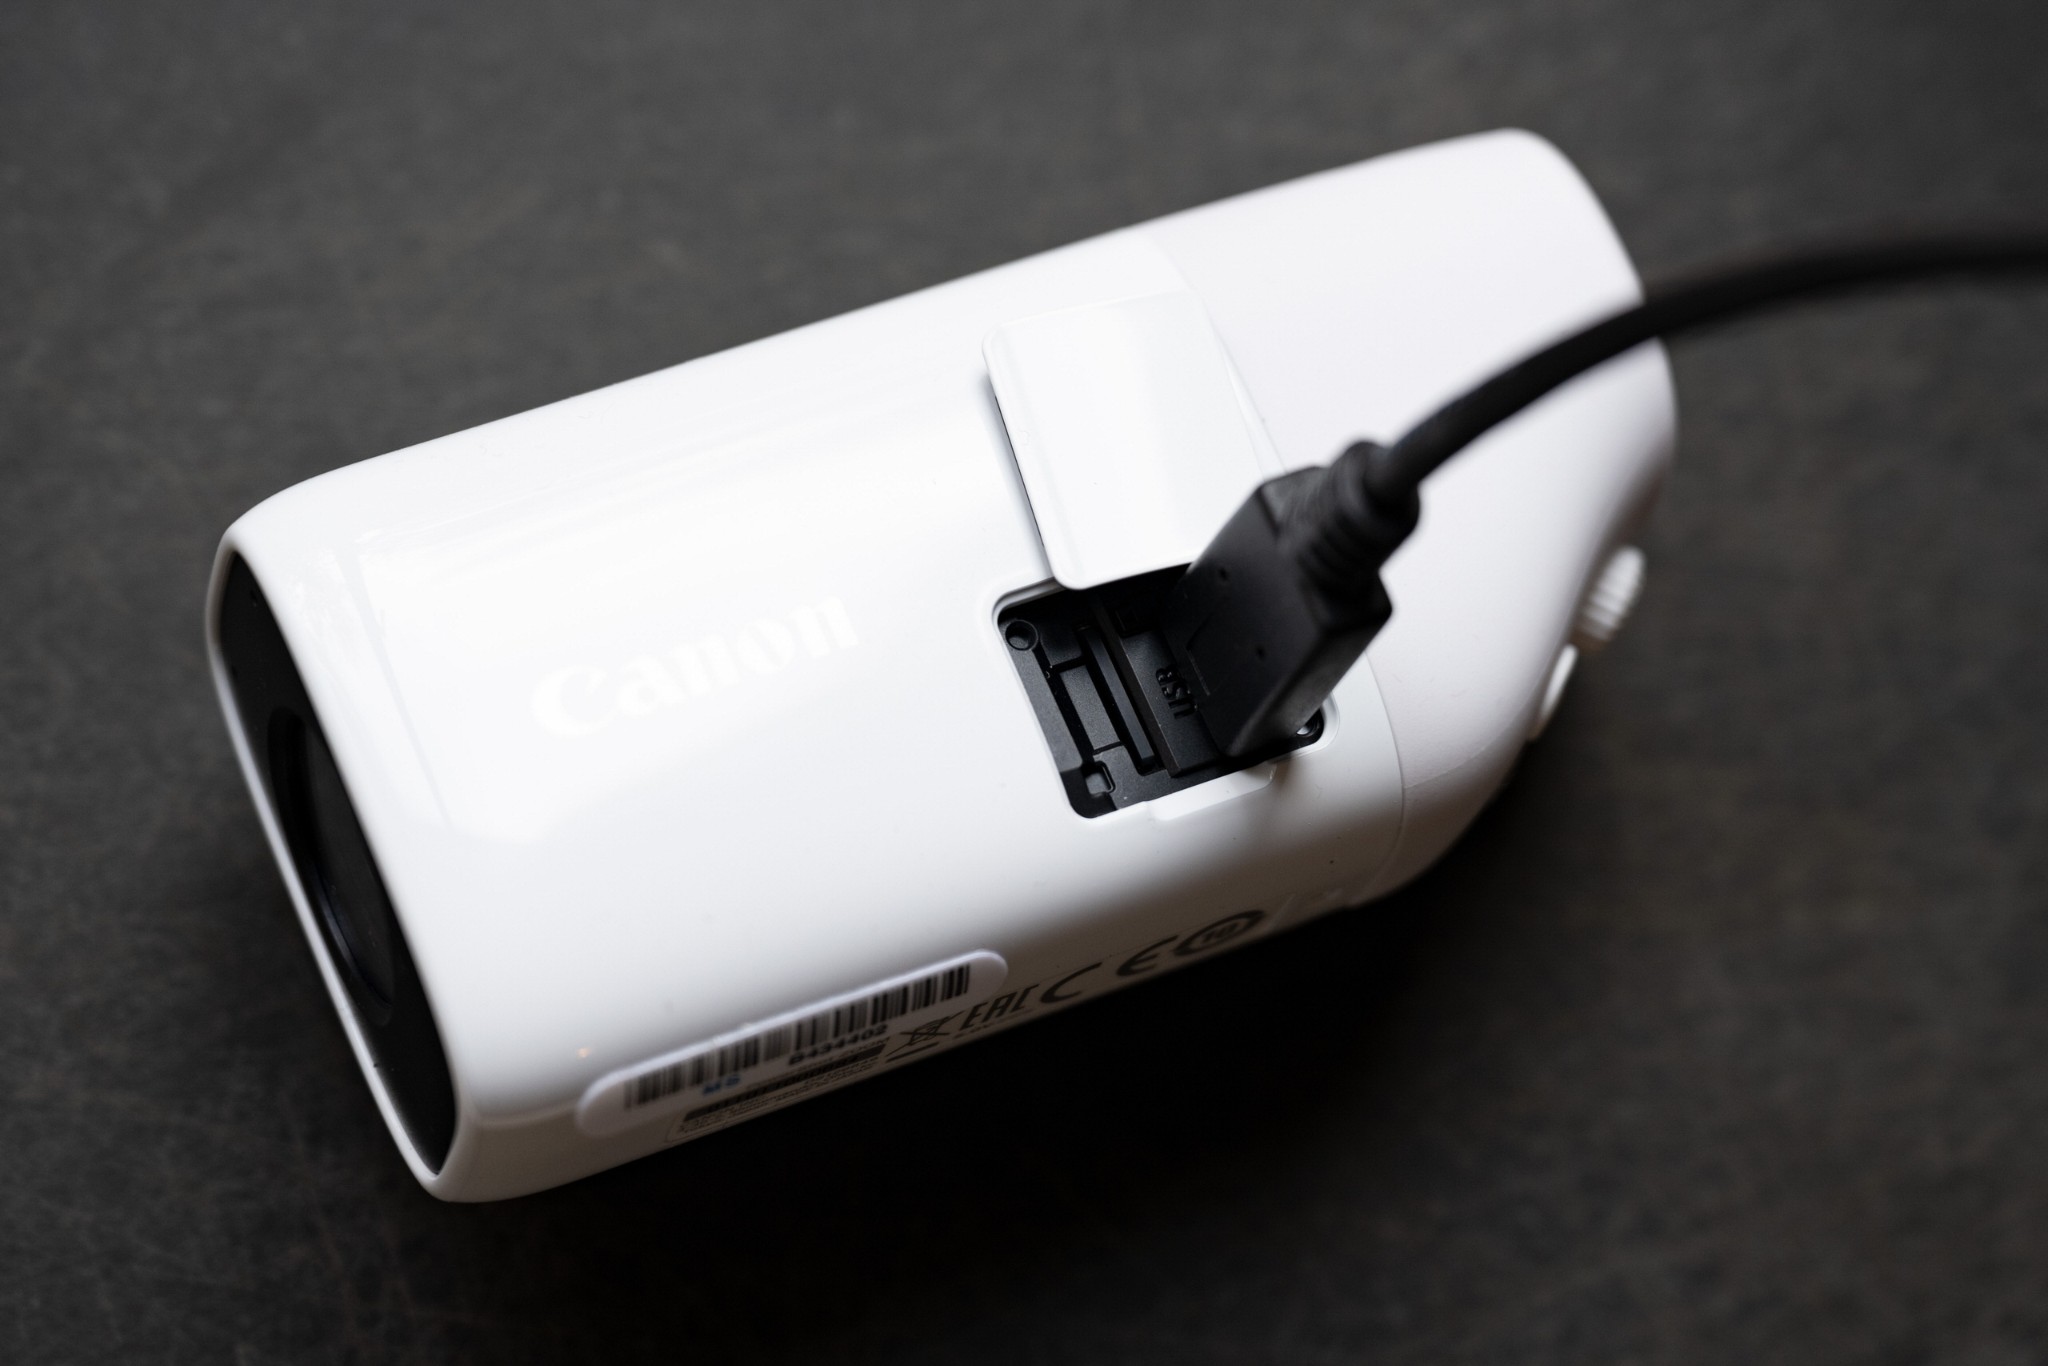 Canon ra mắt máy ảnh PowerShot Zoom nhỏ gọn như ống nhòm và có khả năng zoom tới 400mm